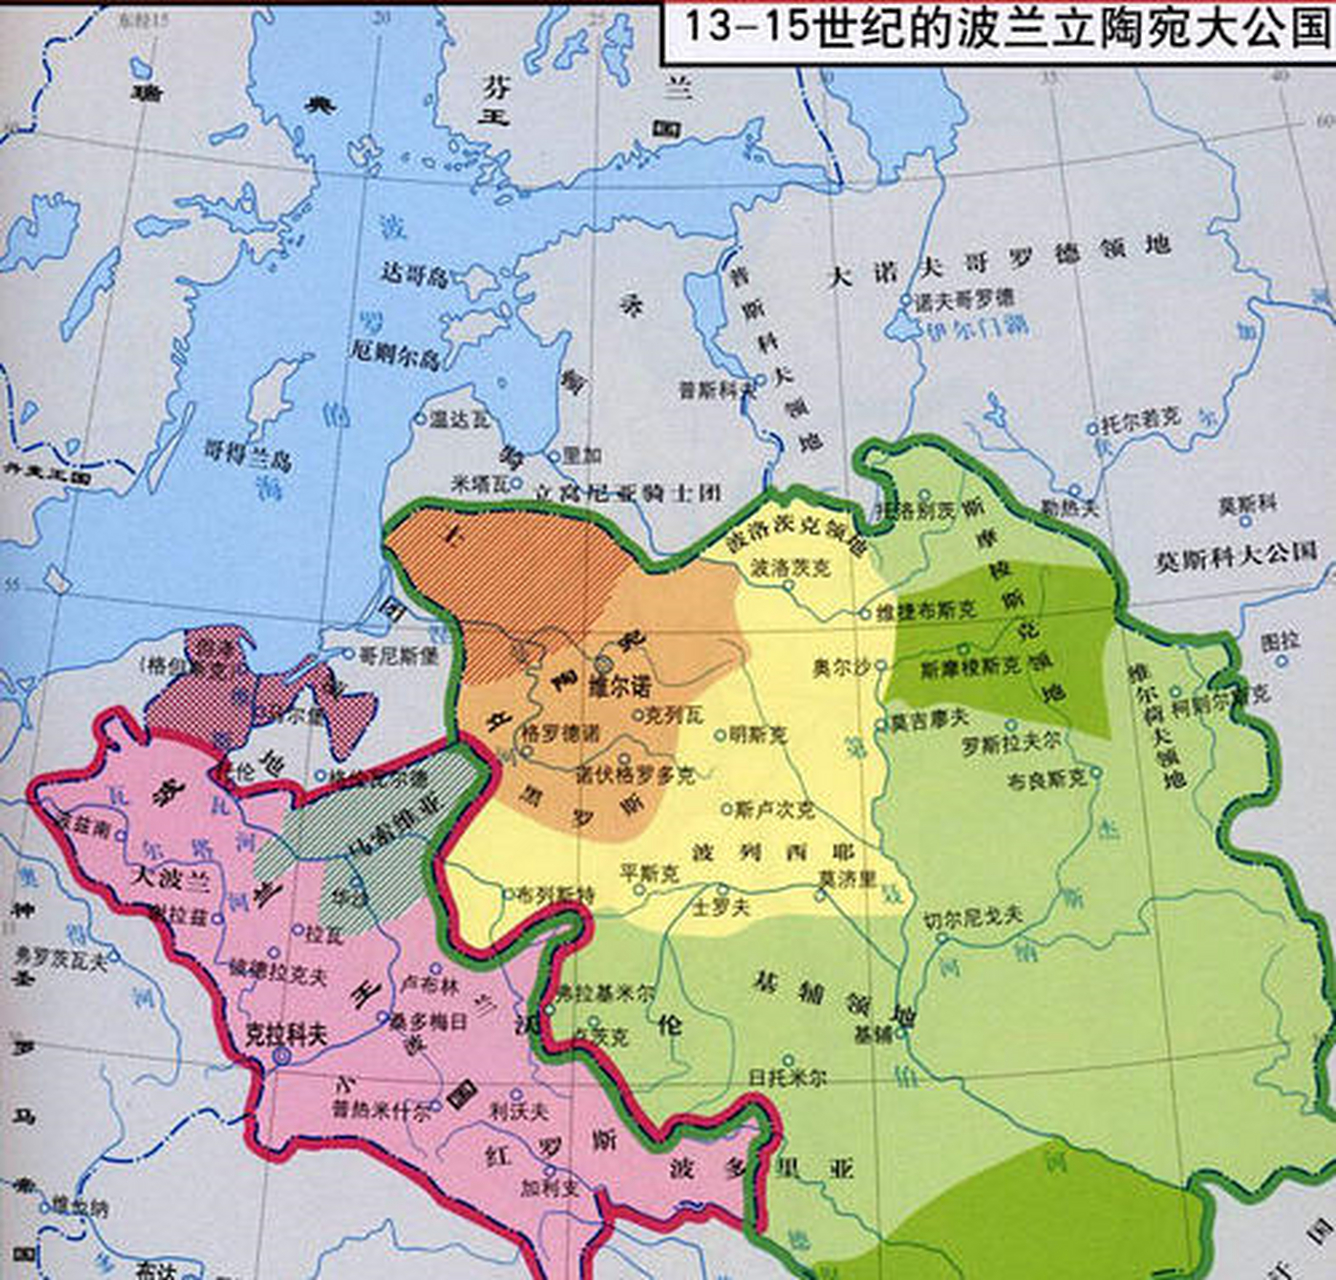 但与此同时,立陶宛旁边的莫斯科大公国迅速崛起,成为了立陶宛大公国最